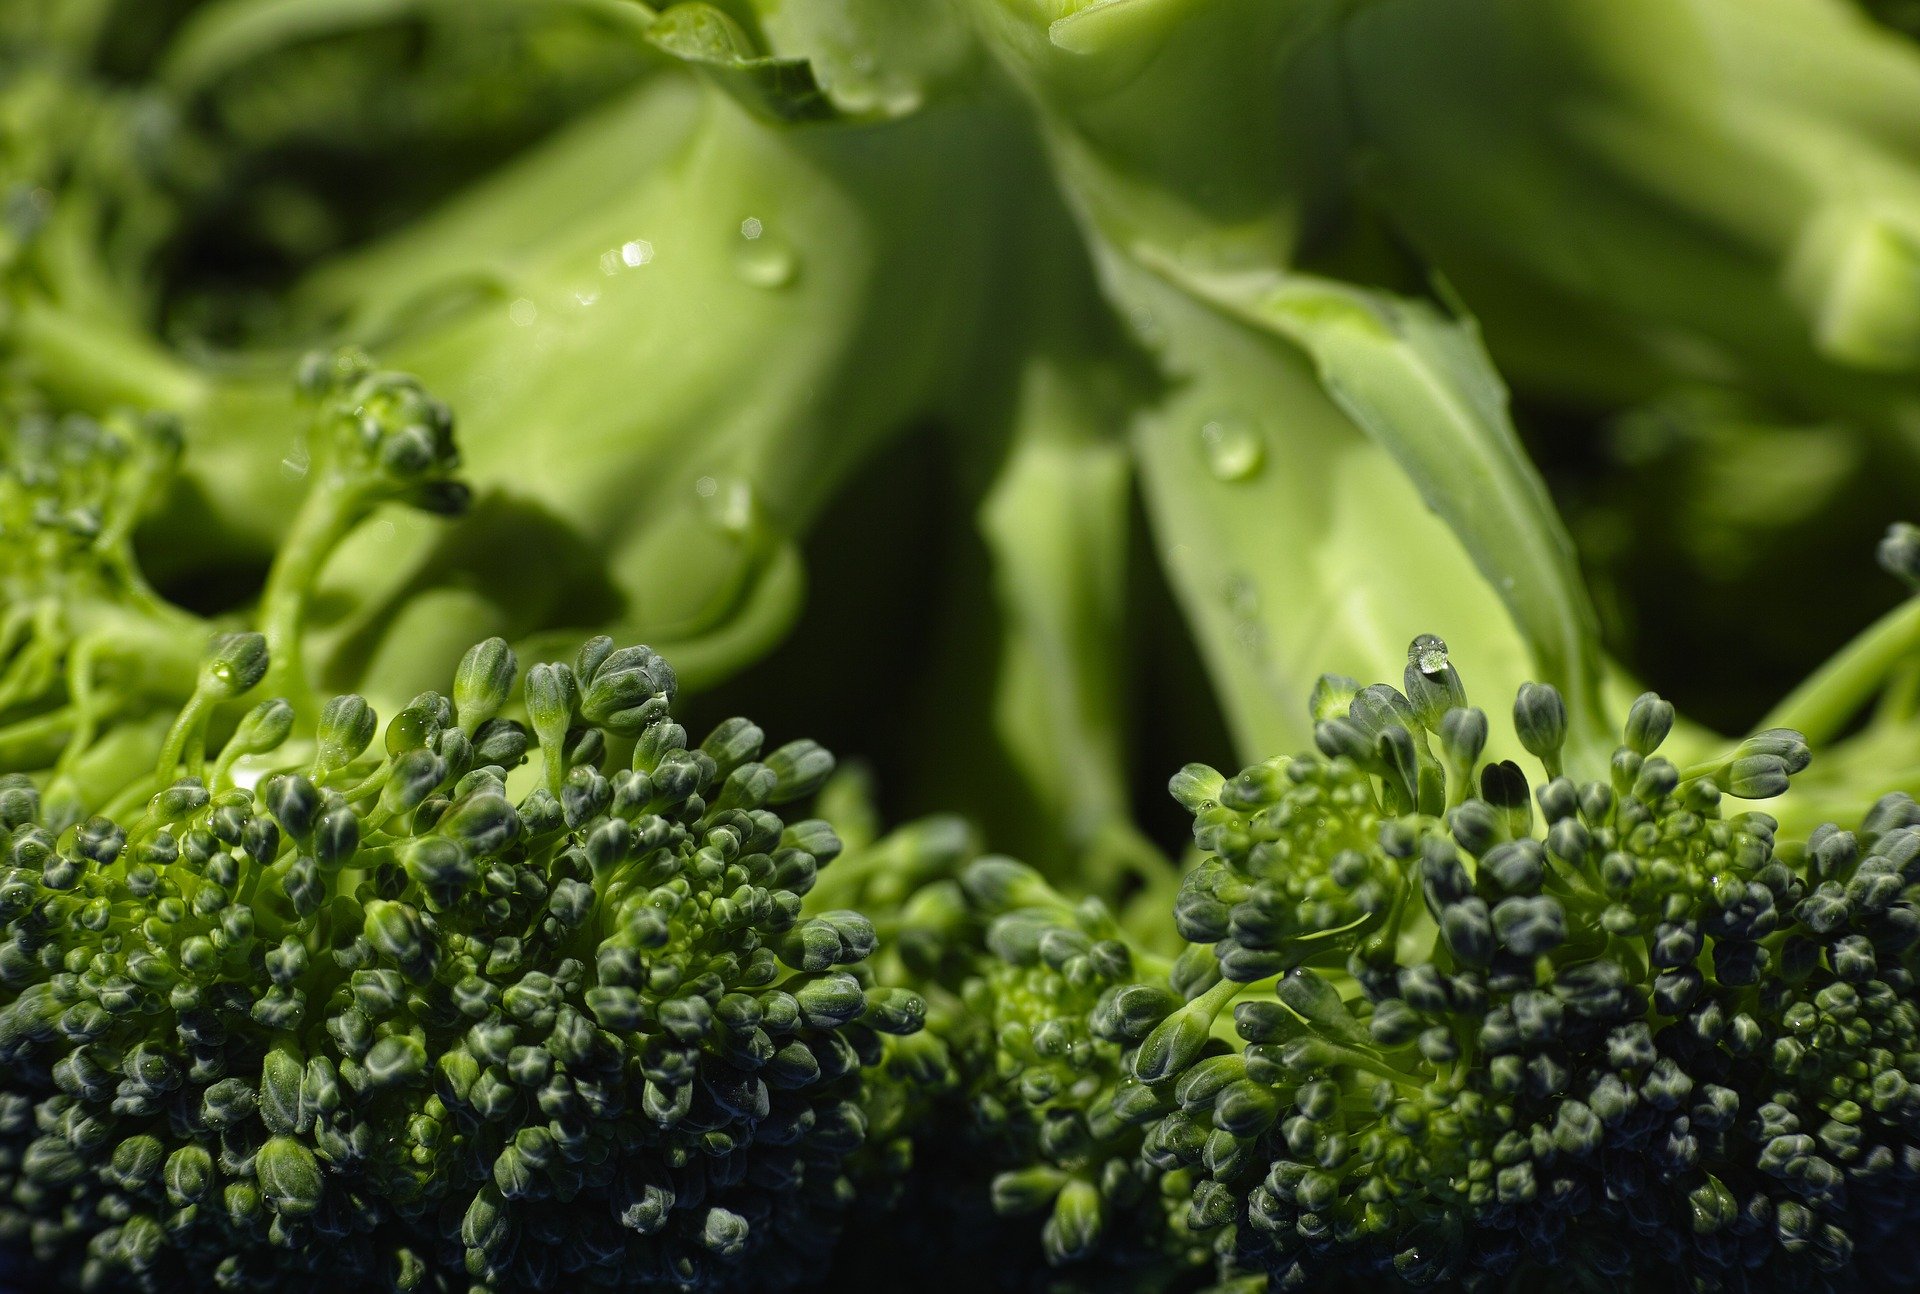 Brokoli Nasıl Pişirilir?